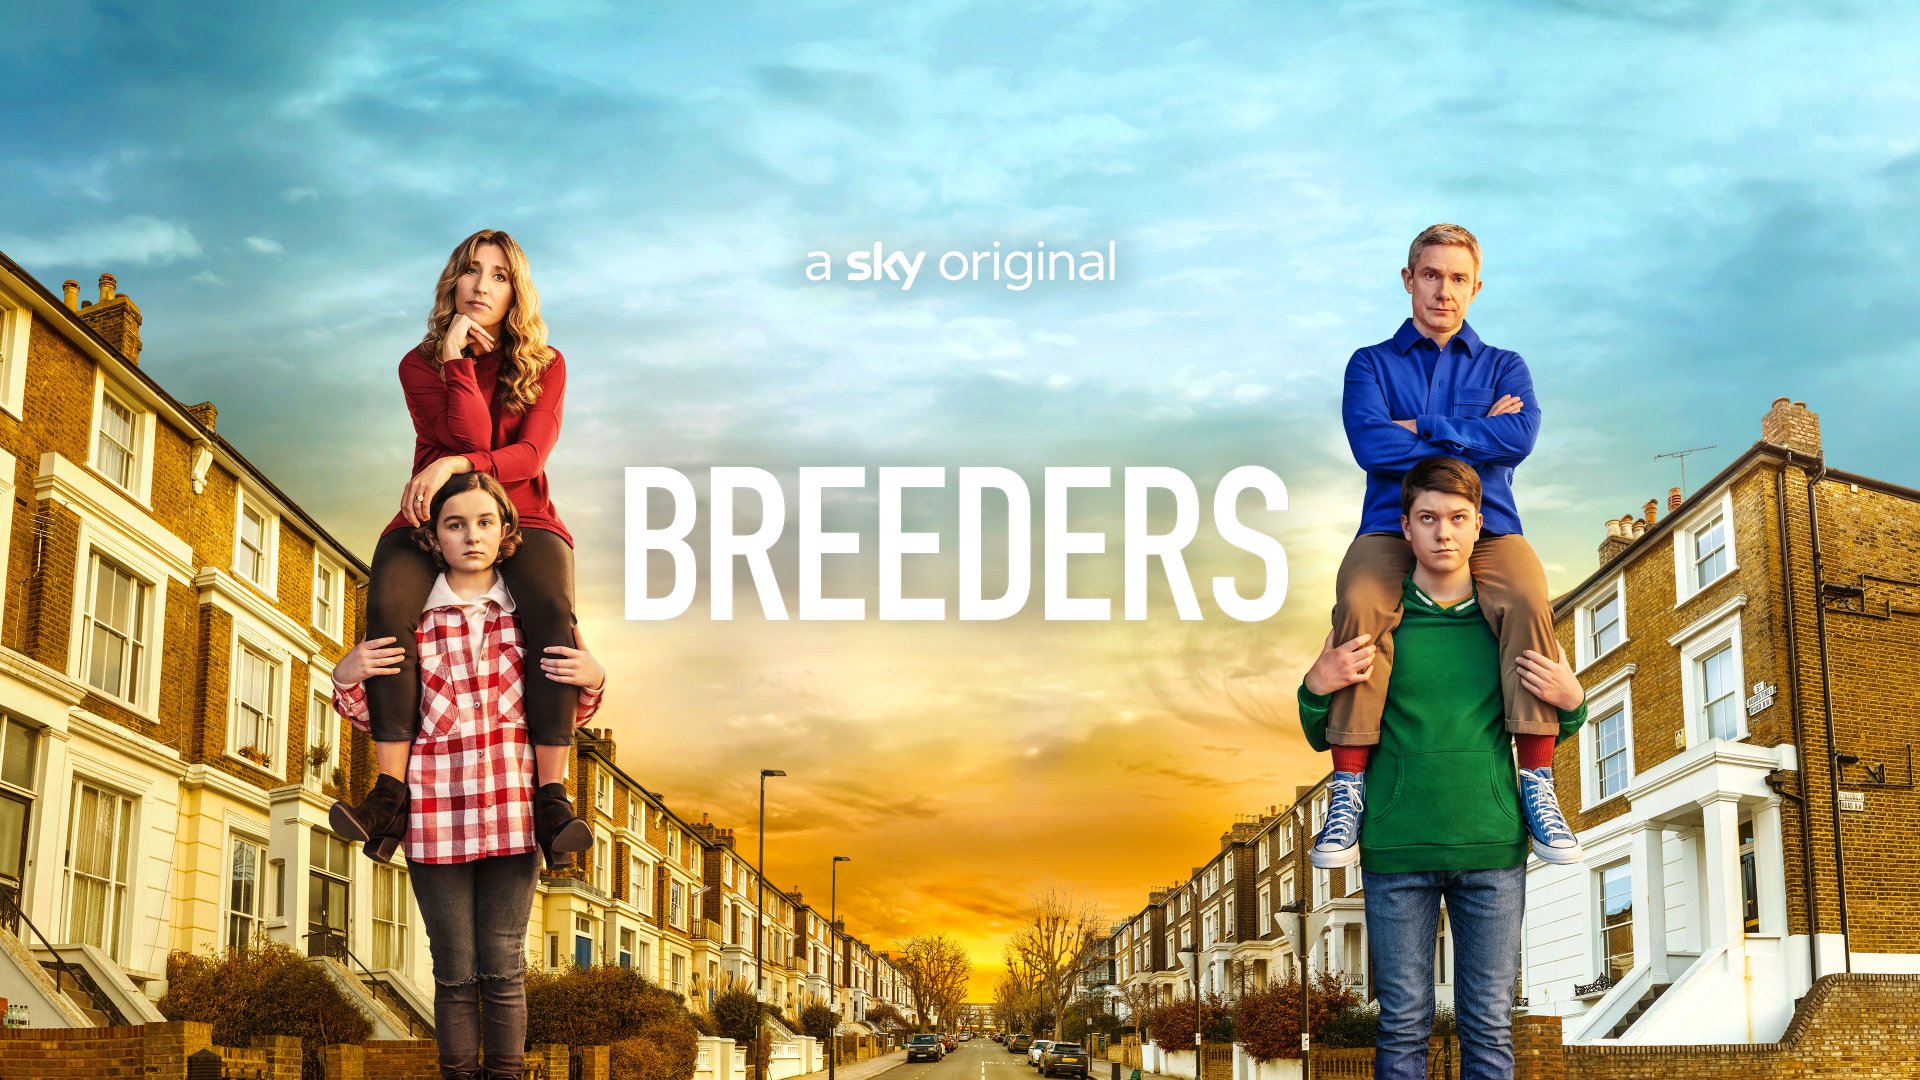 Watch Breeders Season 1 Episode 1 Online - Stream Full Episodes